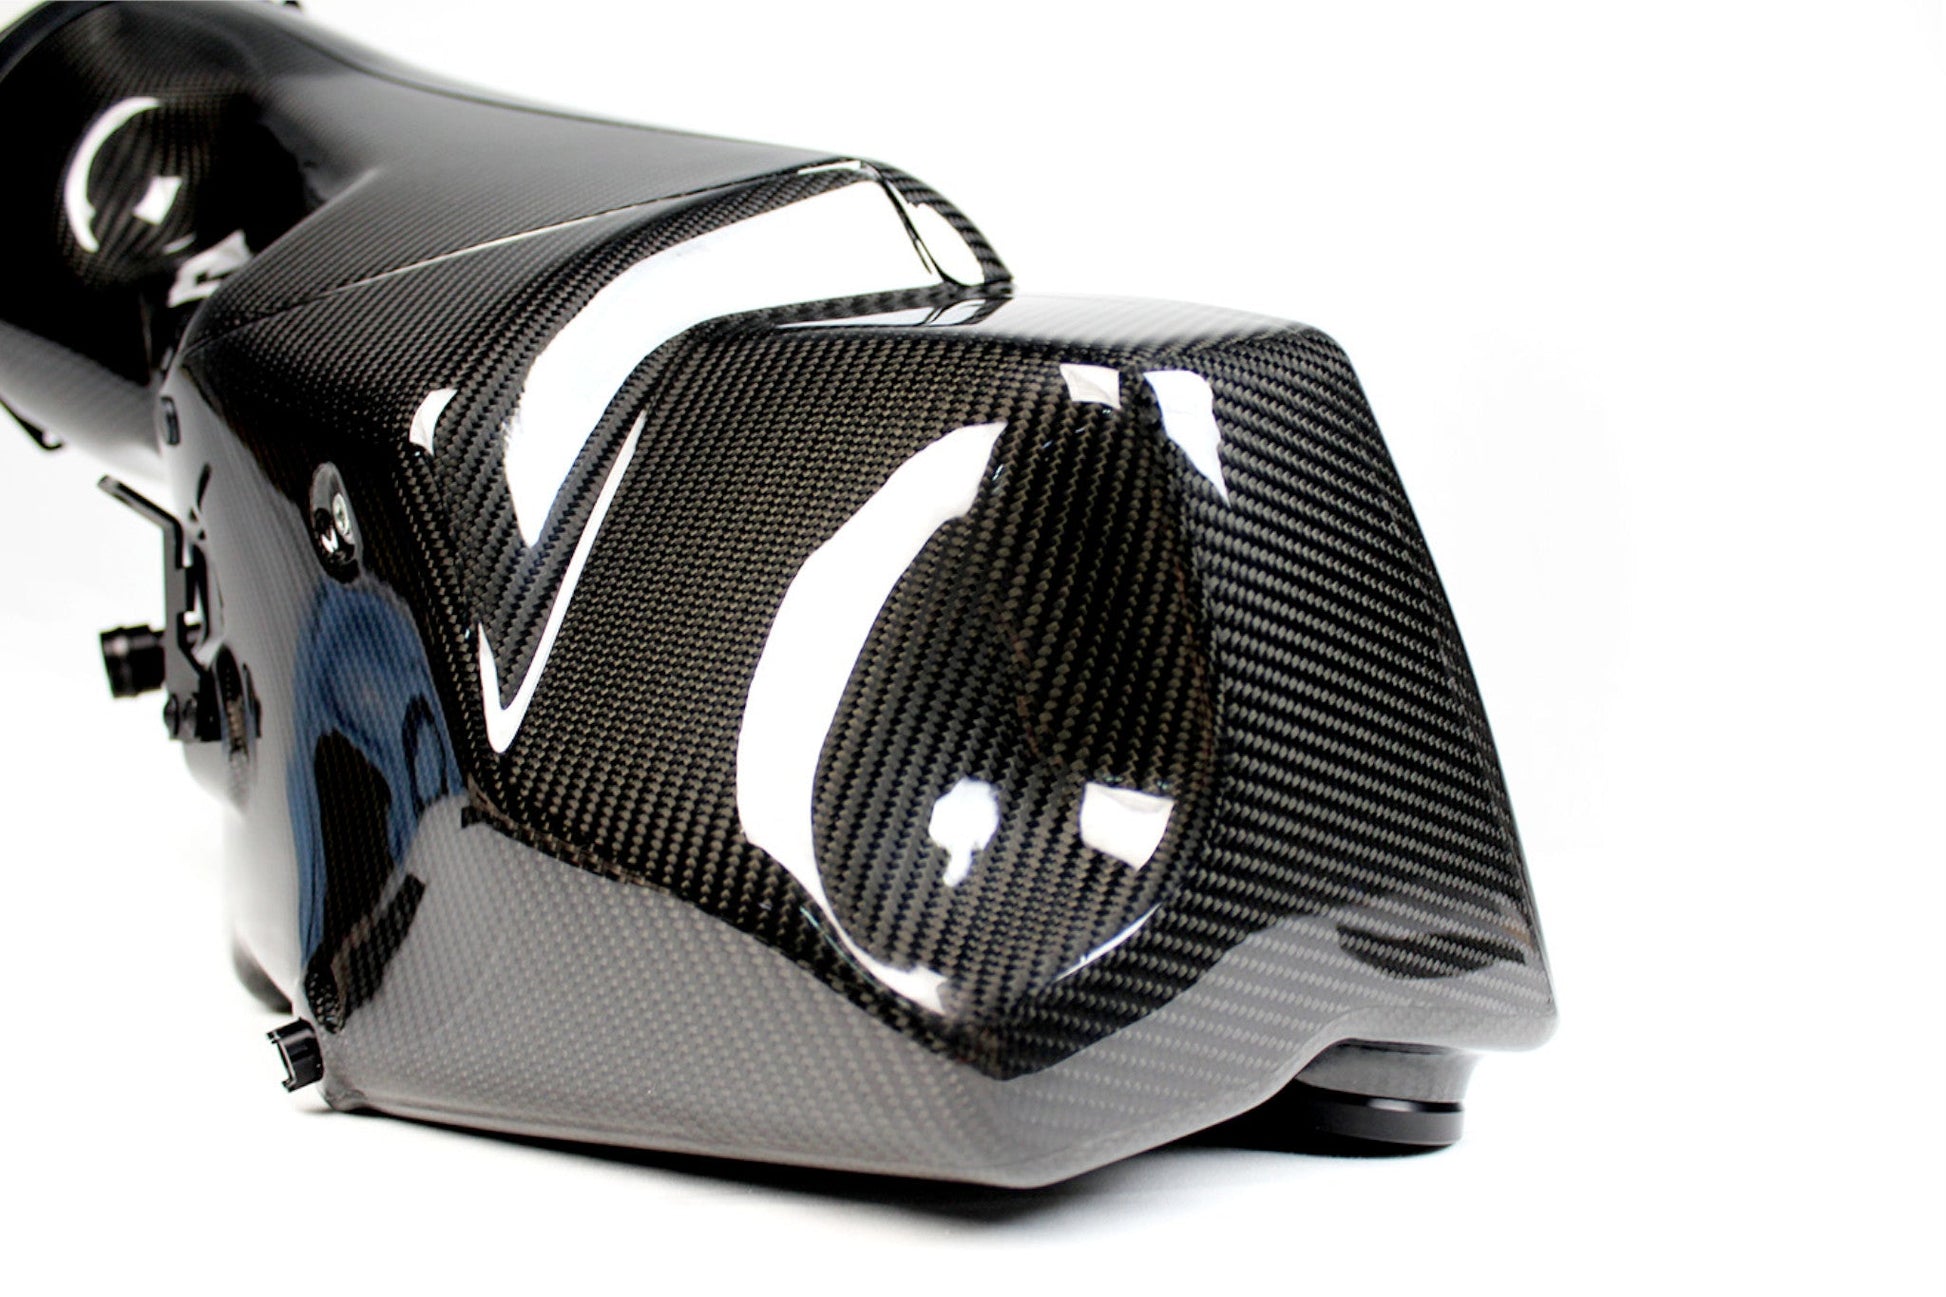 Karbonius Carbon Fibre Airbox CSL S54 Swap - BMW E30 - Evolve Automotive